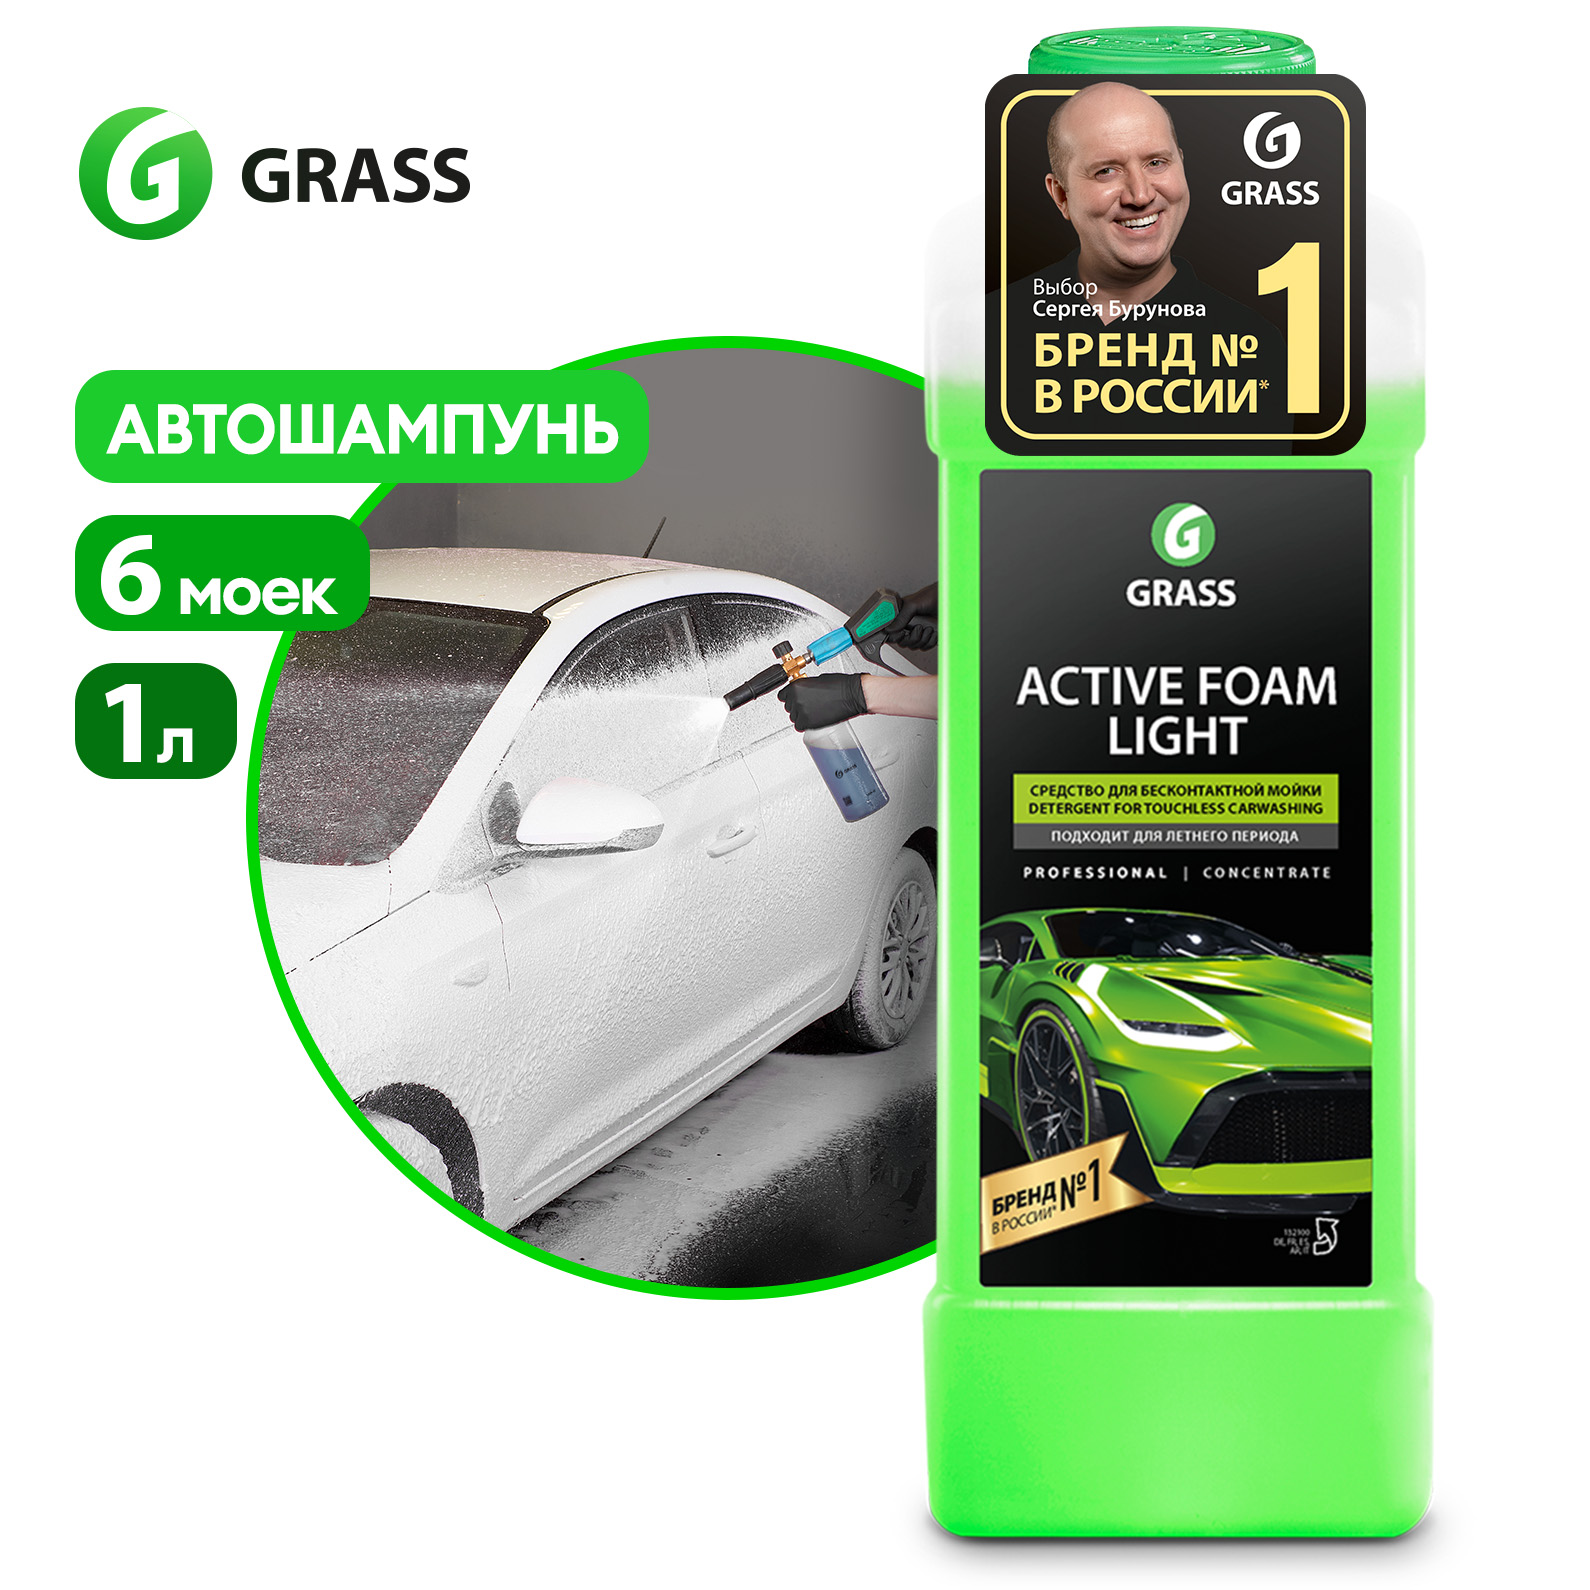 Автошампунь для бесконтактной мойки GRASS активная пена Active Foam Light 1л - купить в Мегамаркет МСК Еремино, цена на Мегамаркет